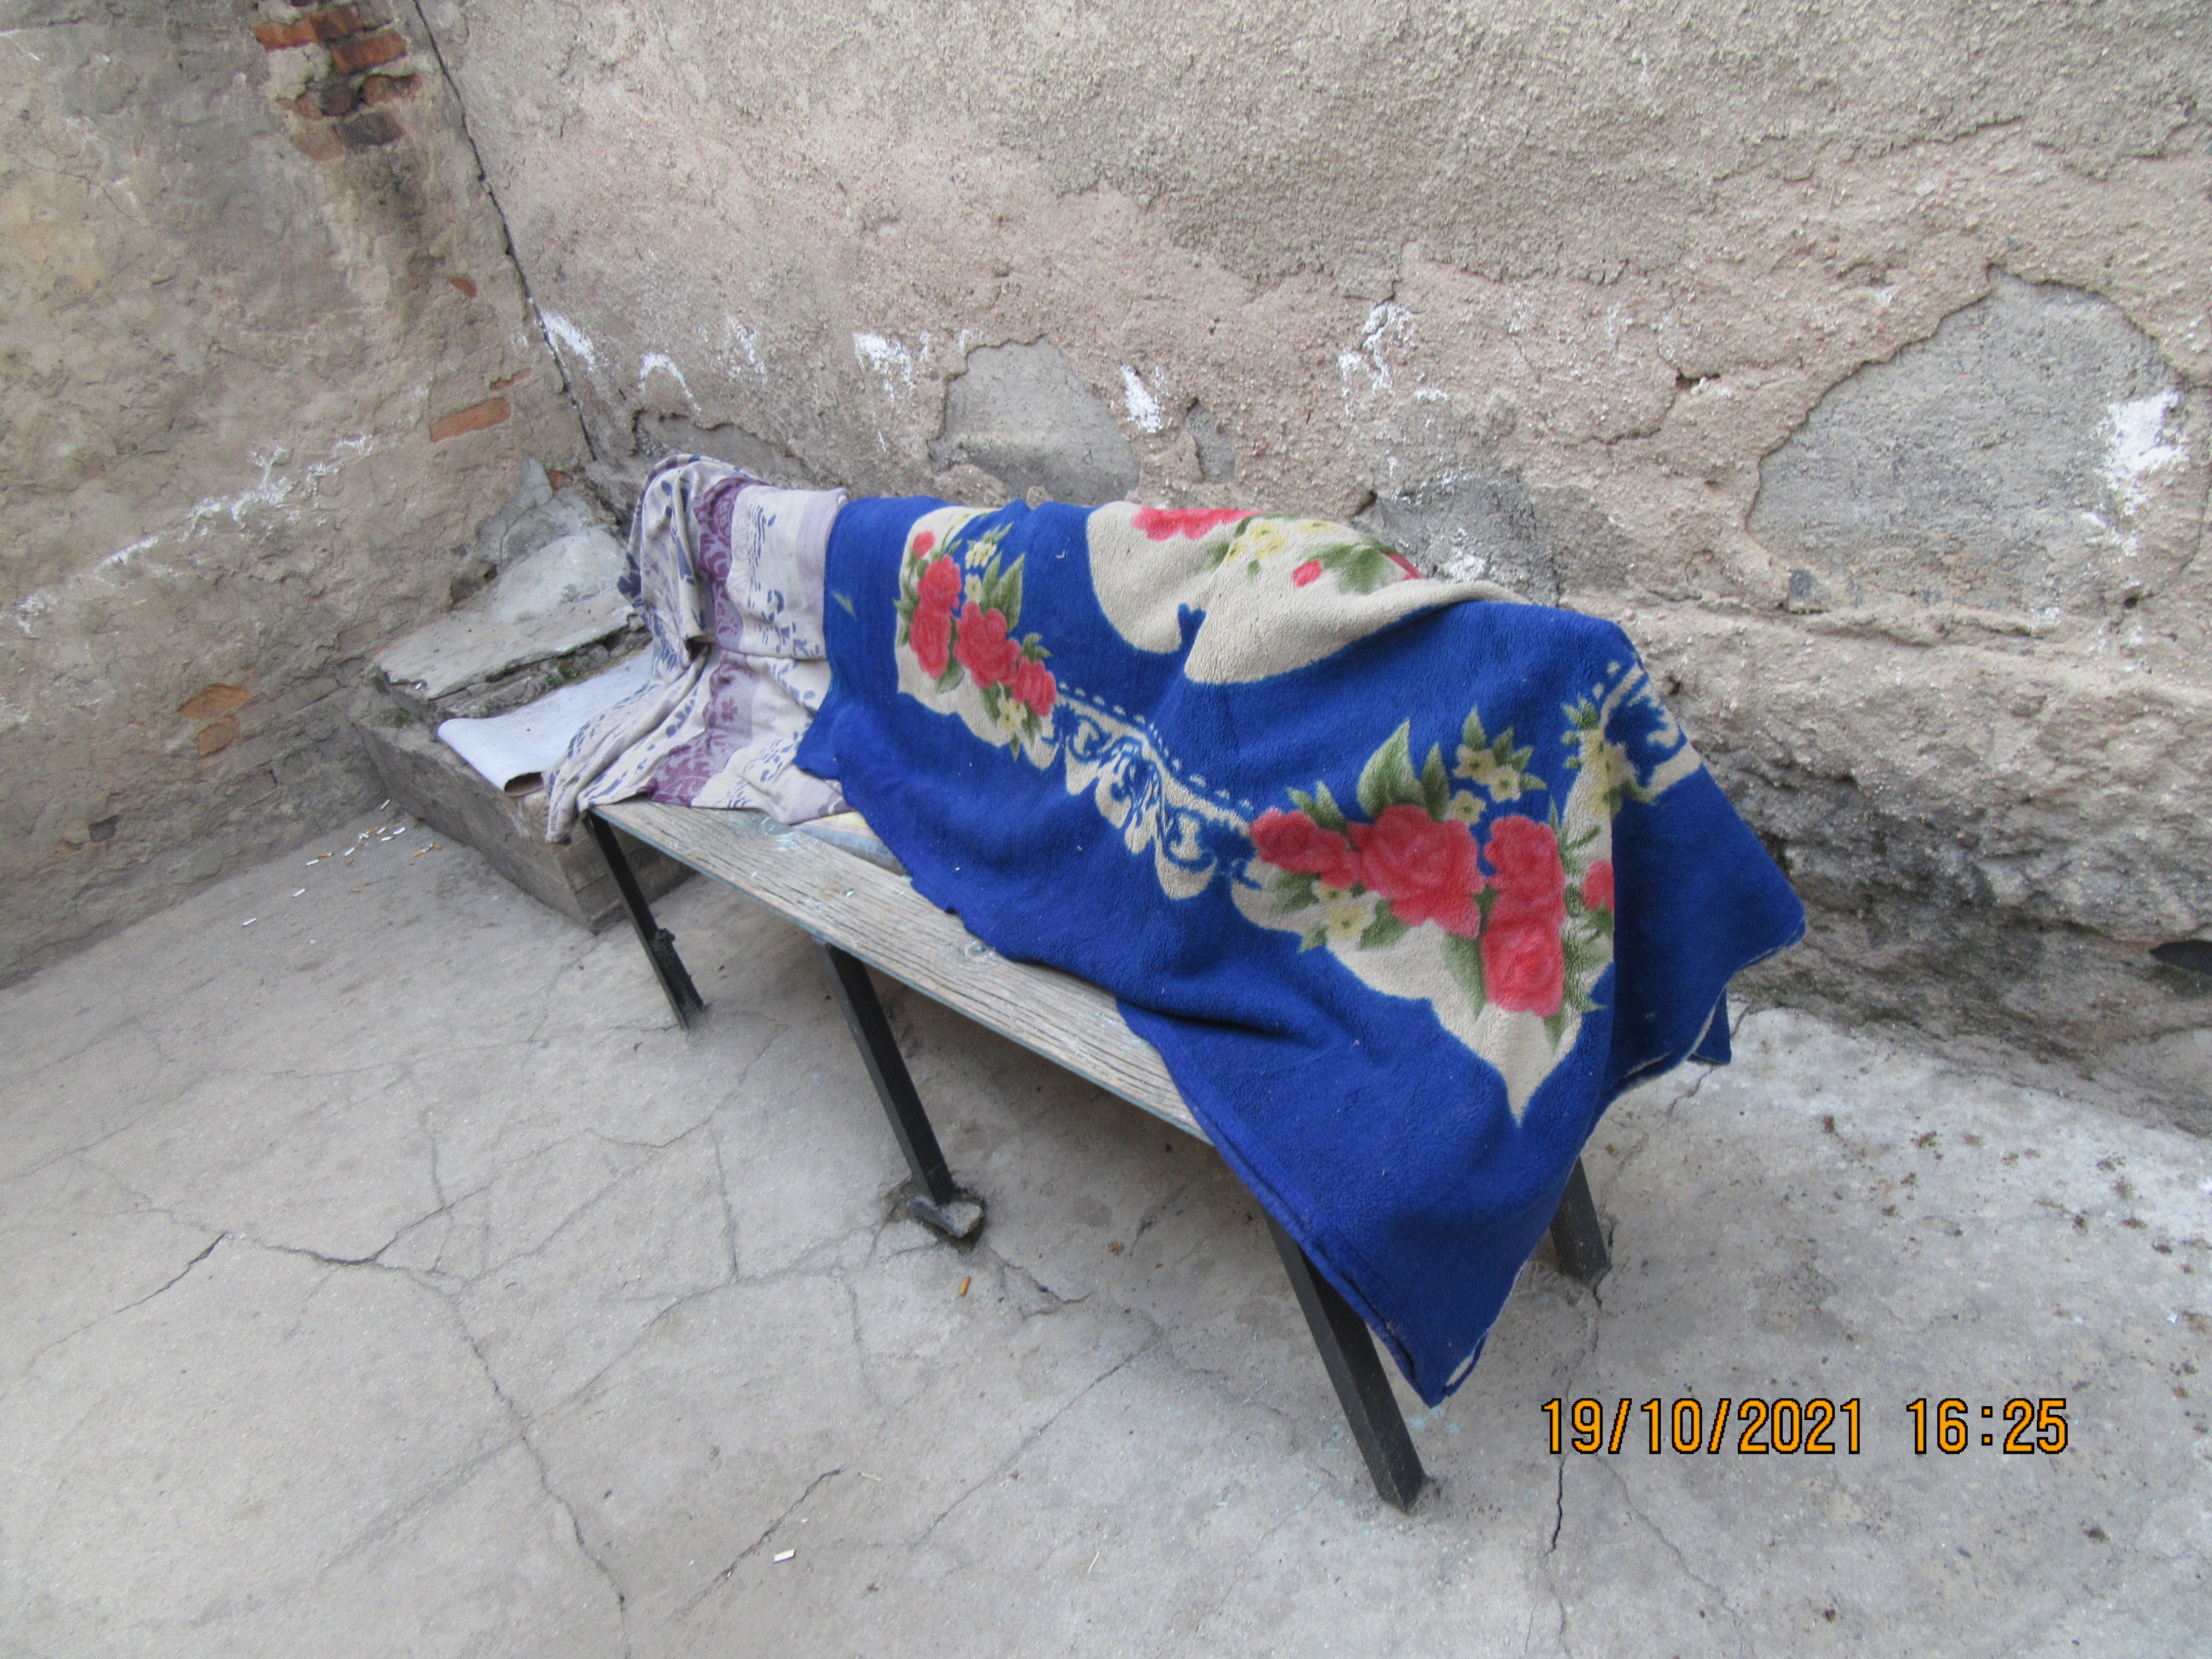 «Негде спать, сырость и грязь»: в ИВС Таласа задержанных содержат в ужасных условиях